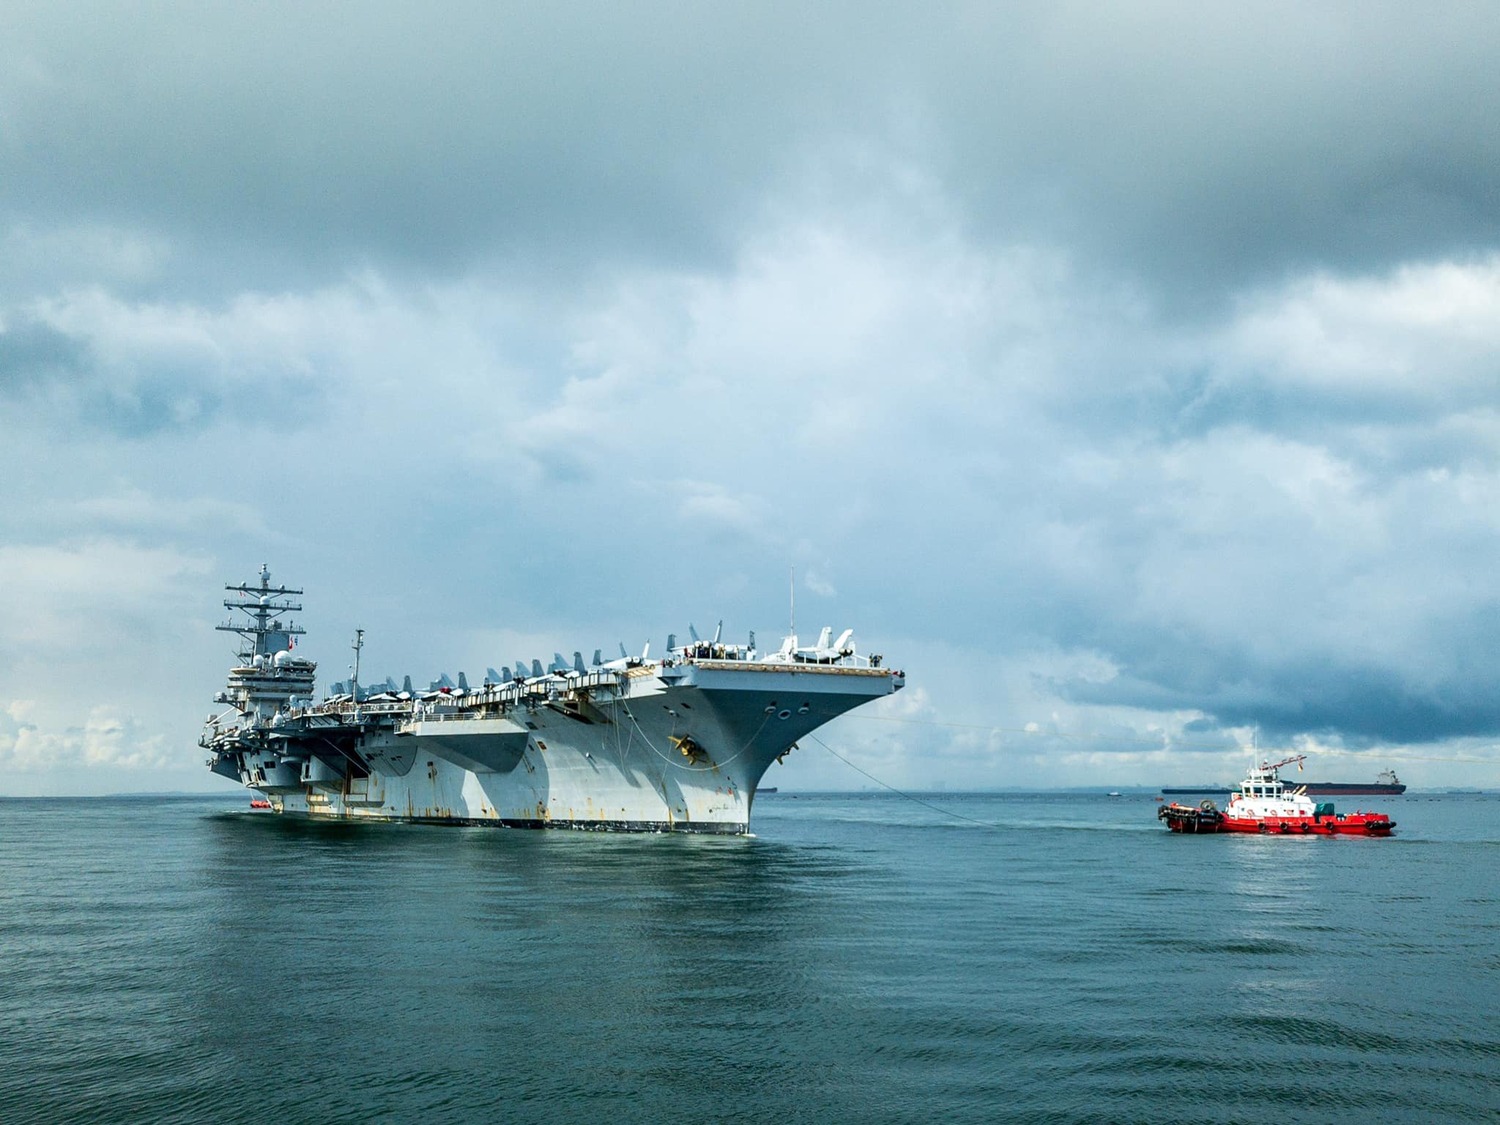 美國航空母艦「雷根號」（USS Ronald Reagan）打擊群正朝台灣方向前進。   圖/取自USS Ronald Reagan (CVN 76)臉書粉絲專頁